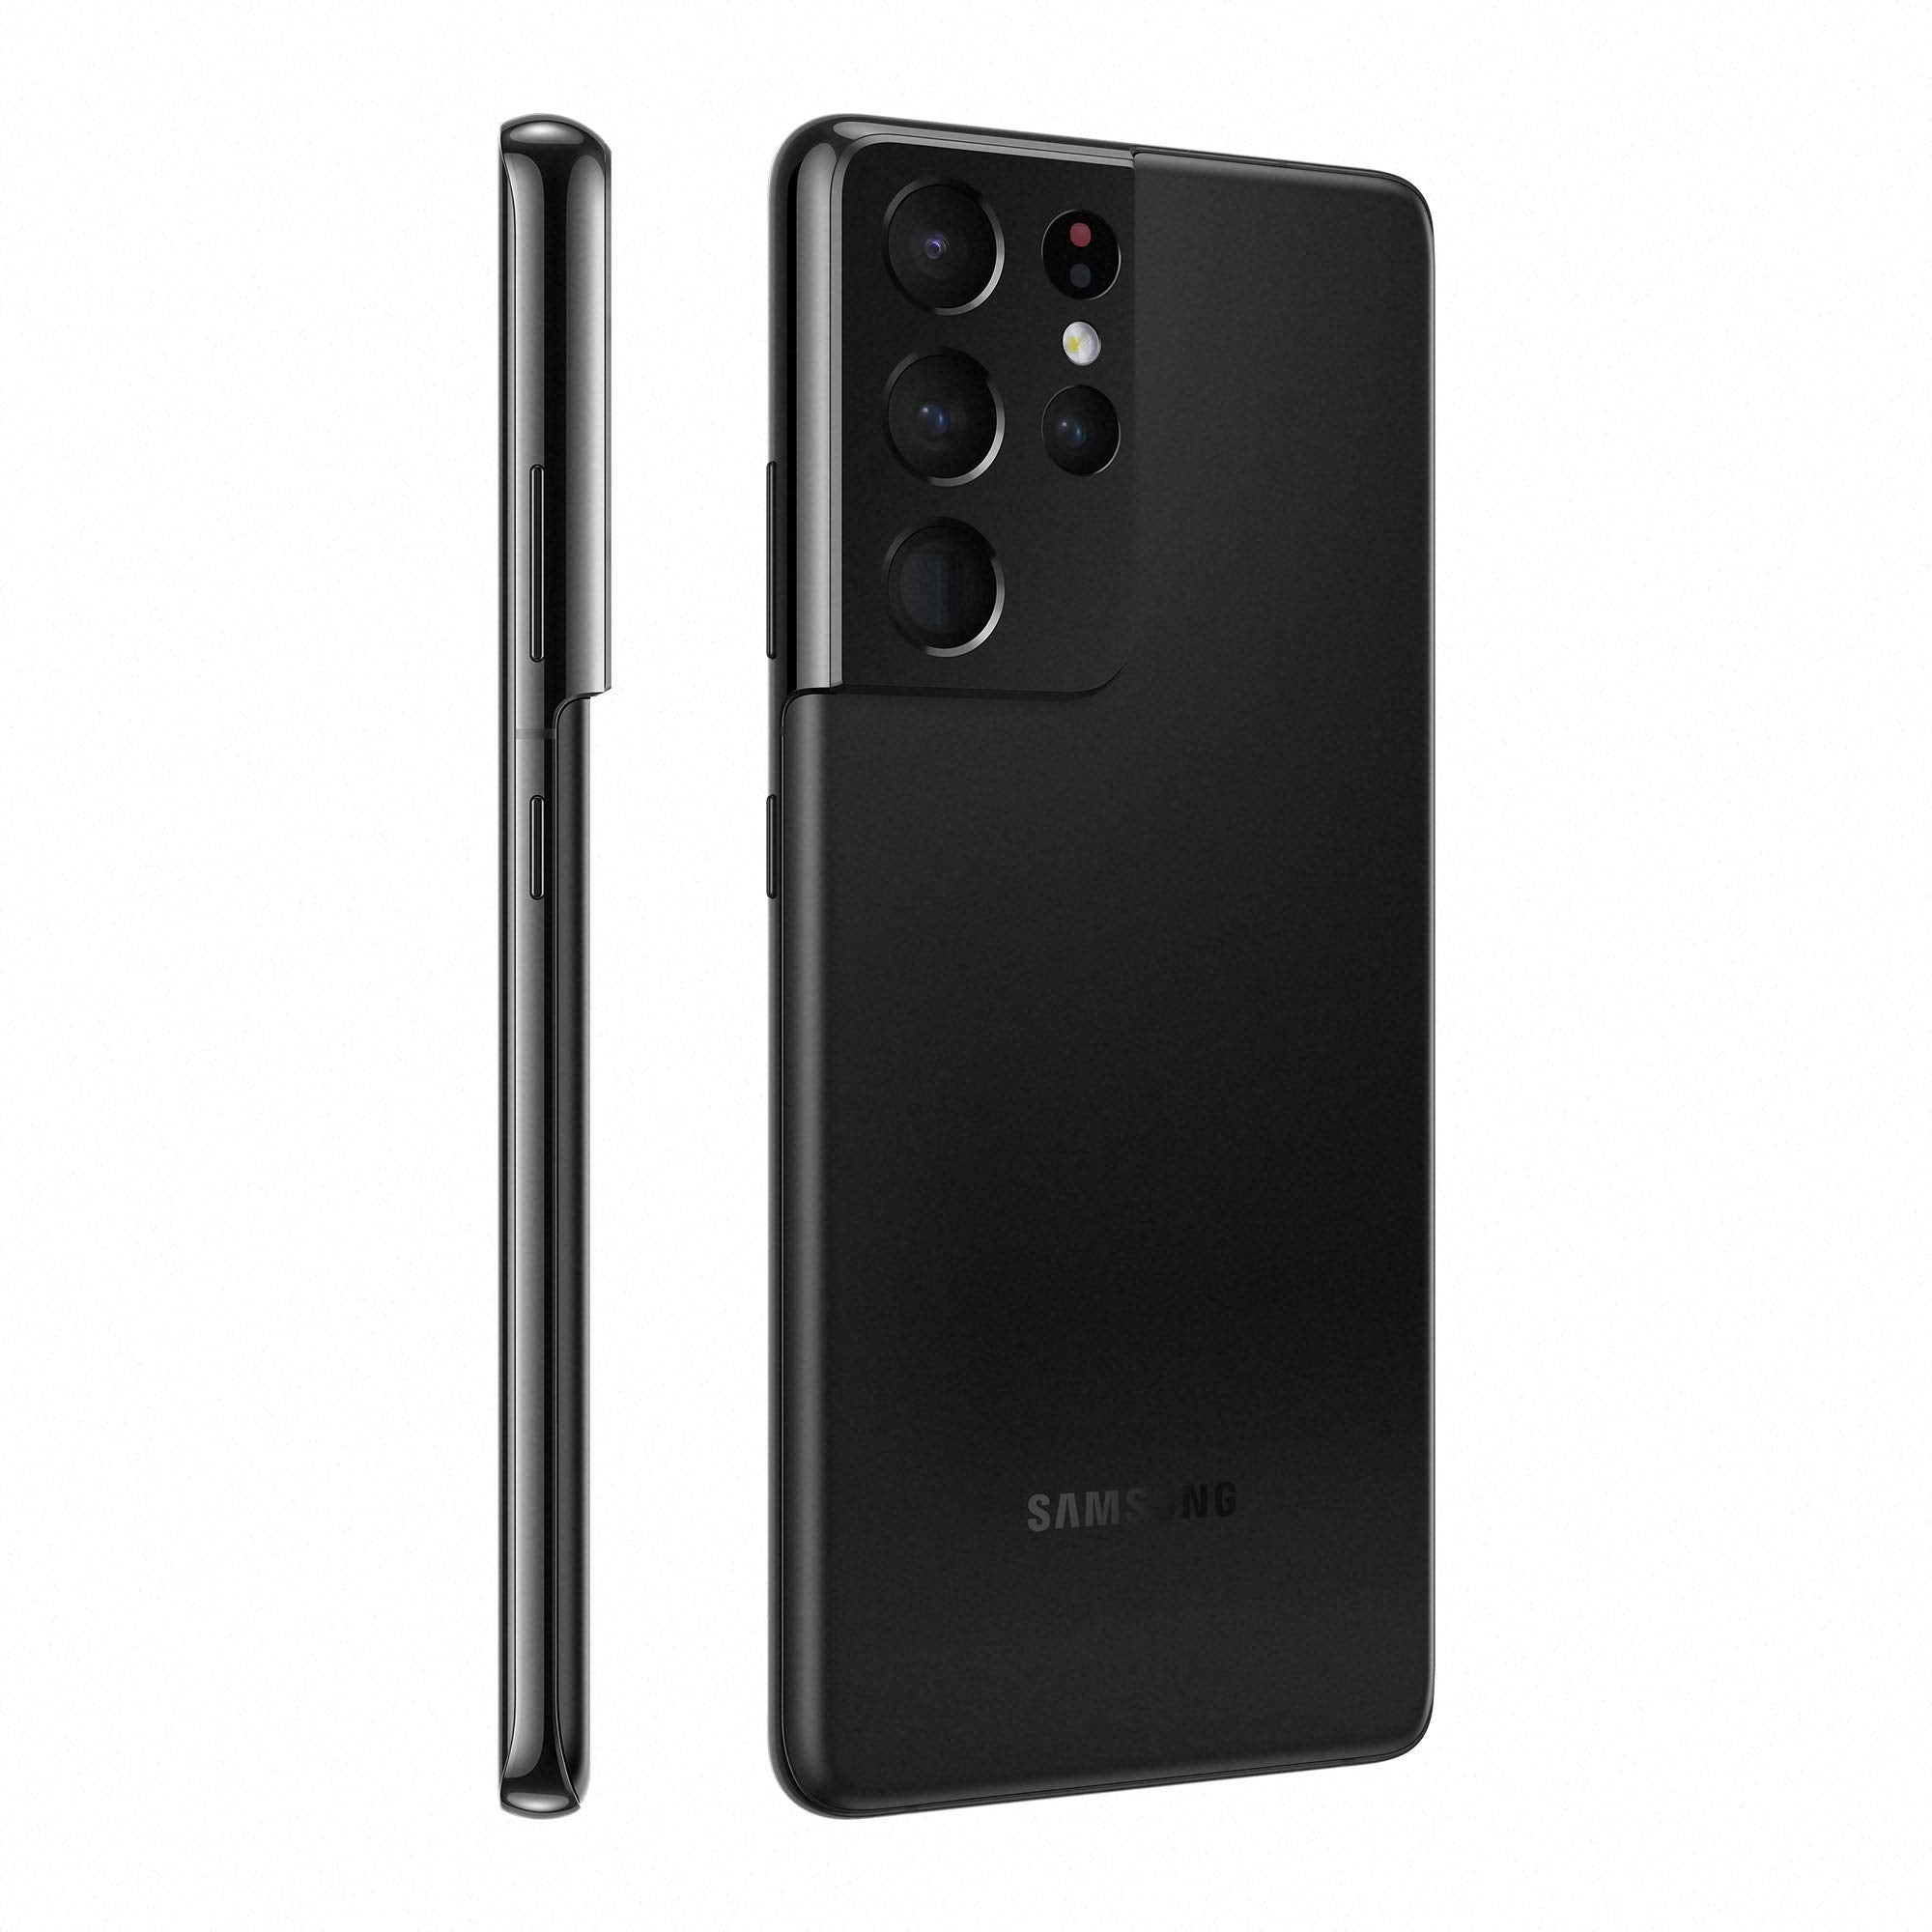 Samsung Galaxy S21 Ultra 5G 256GB Black - Amazon (Renewed)